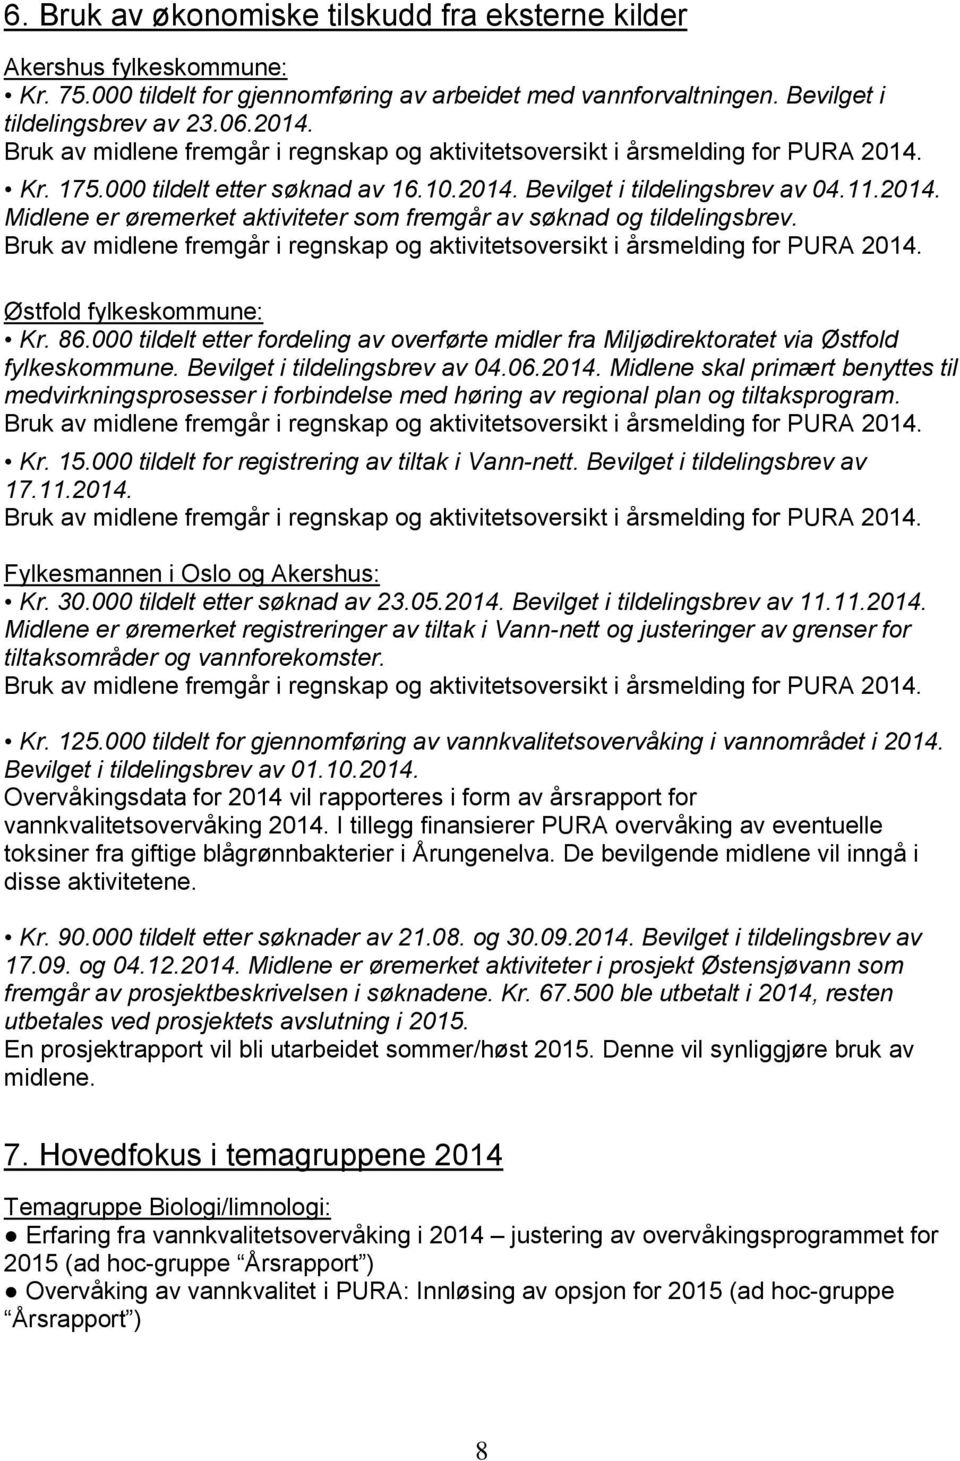 Bruk av midlene fremgår i regnskap og aktivitetsoversikt i årsmelding for PURA 2014. Østfold fylkeskommune: Kr. 86.